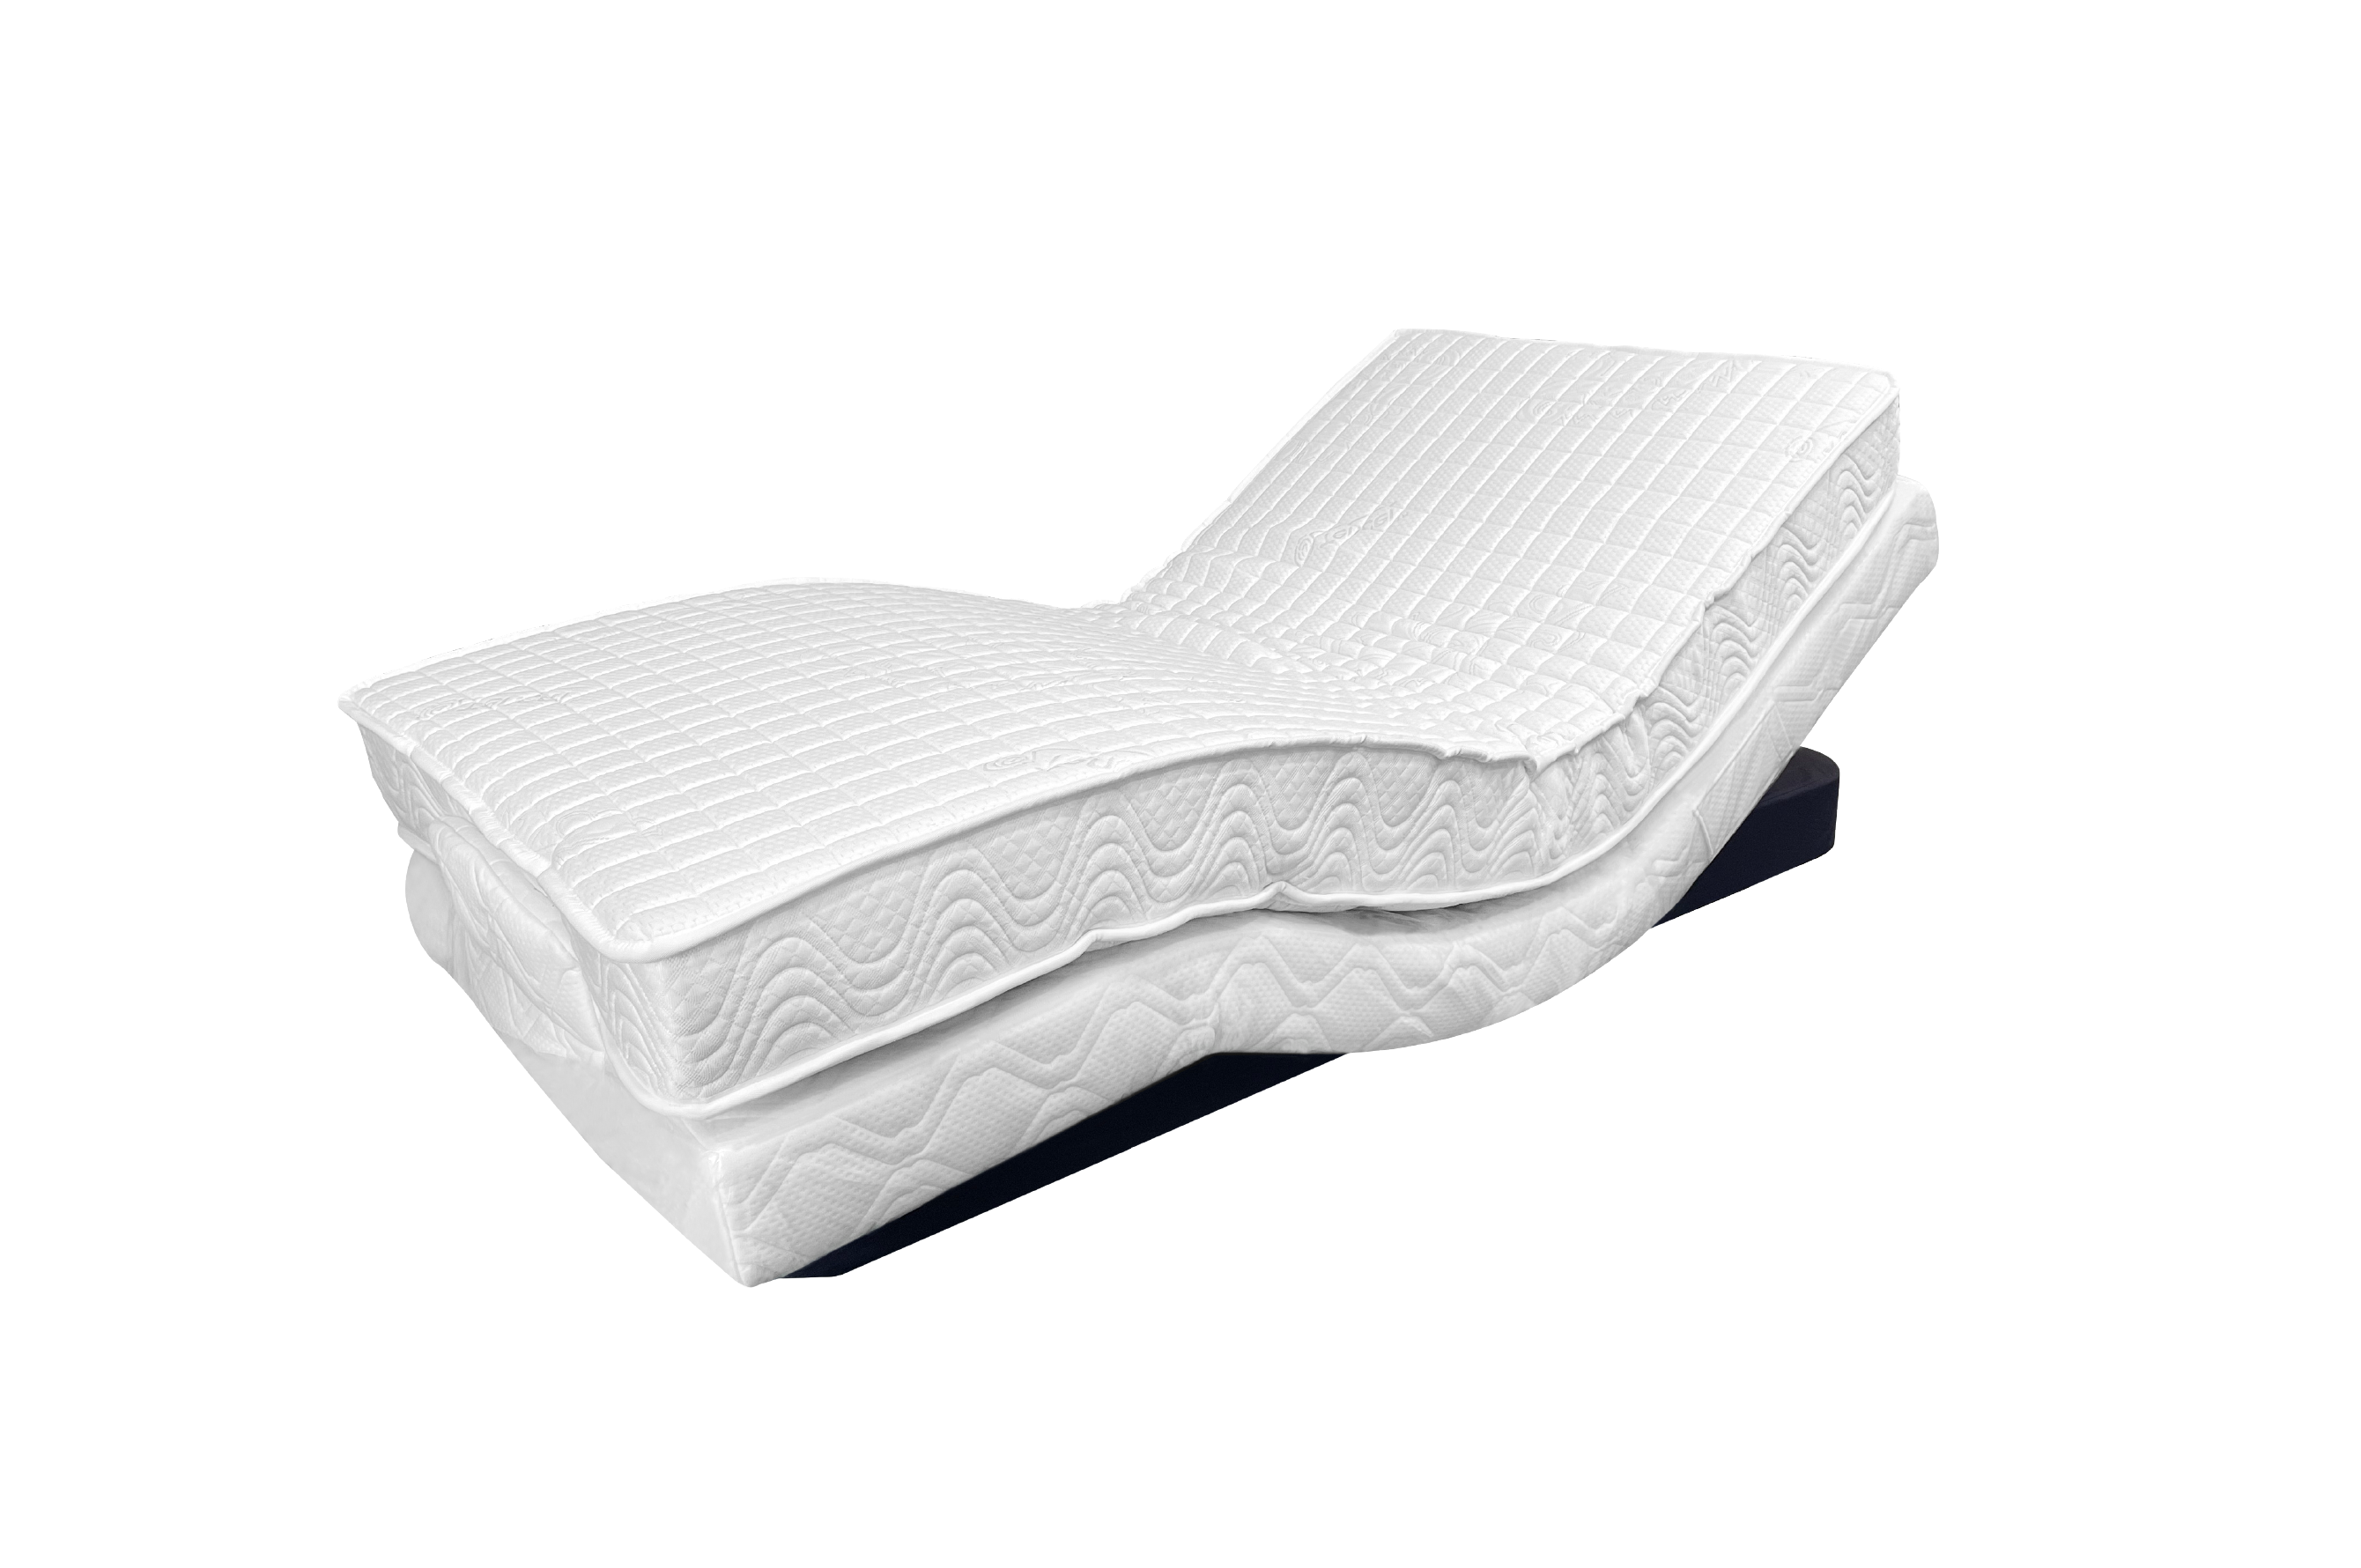 德爾康電動床 / 雙人加大6尺 / 雙面睡-客製化表布&乳膠厚度 / SERIES 3